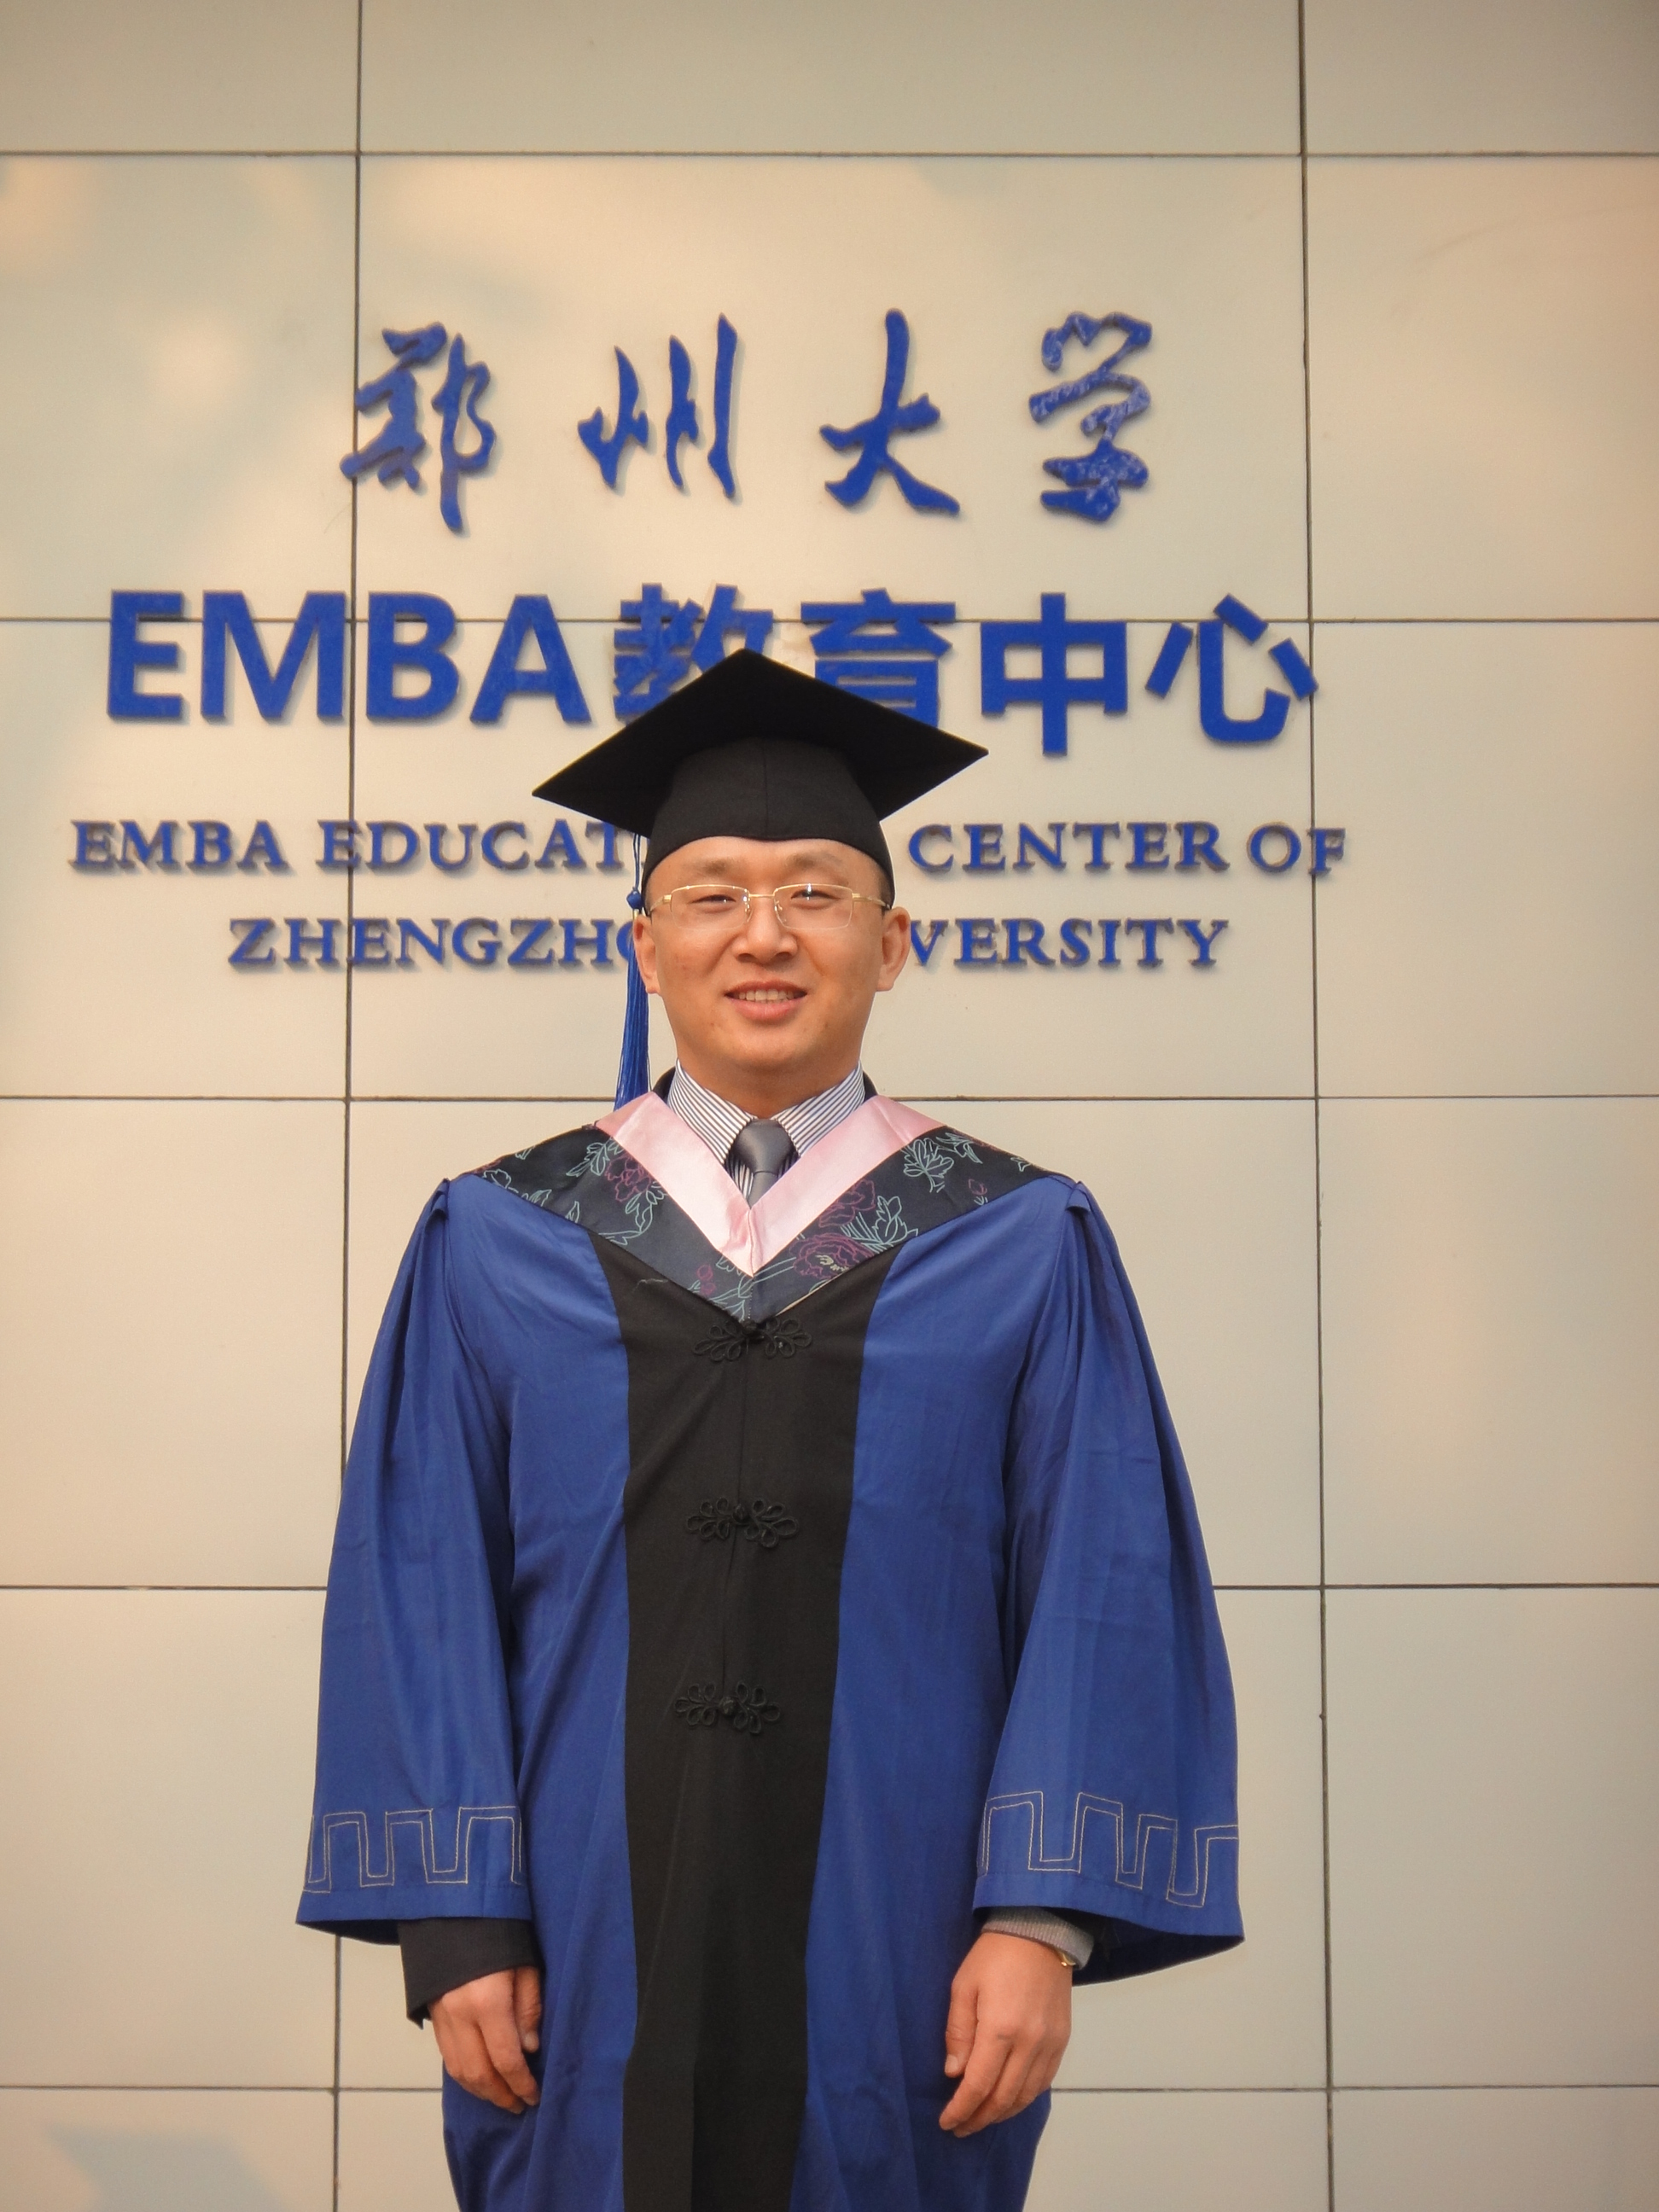 鄭州大學EMBA